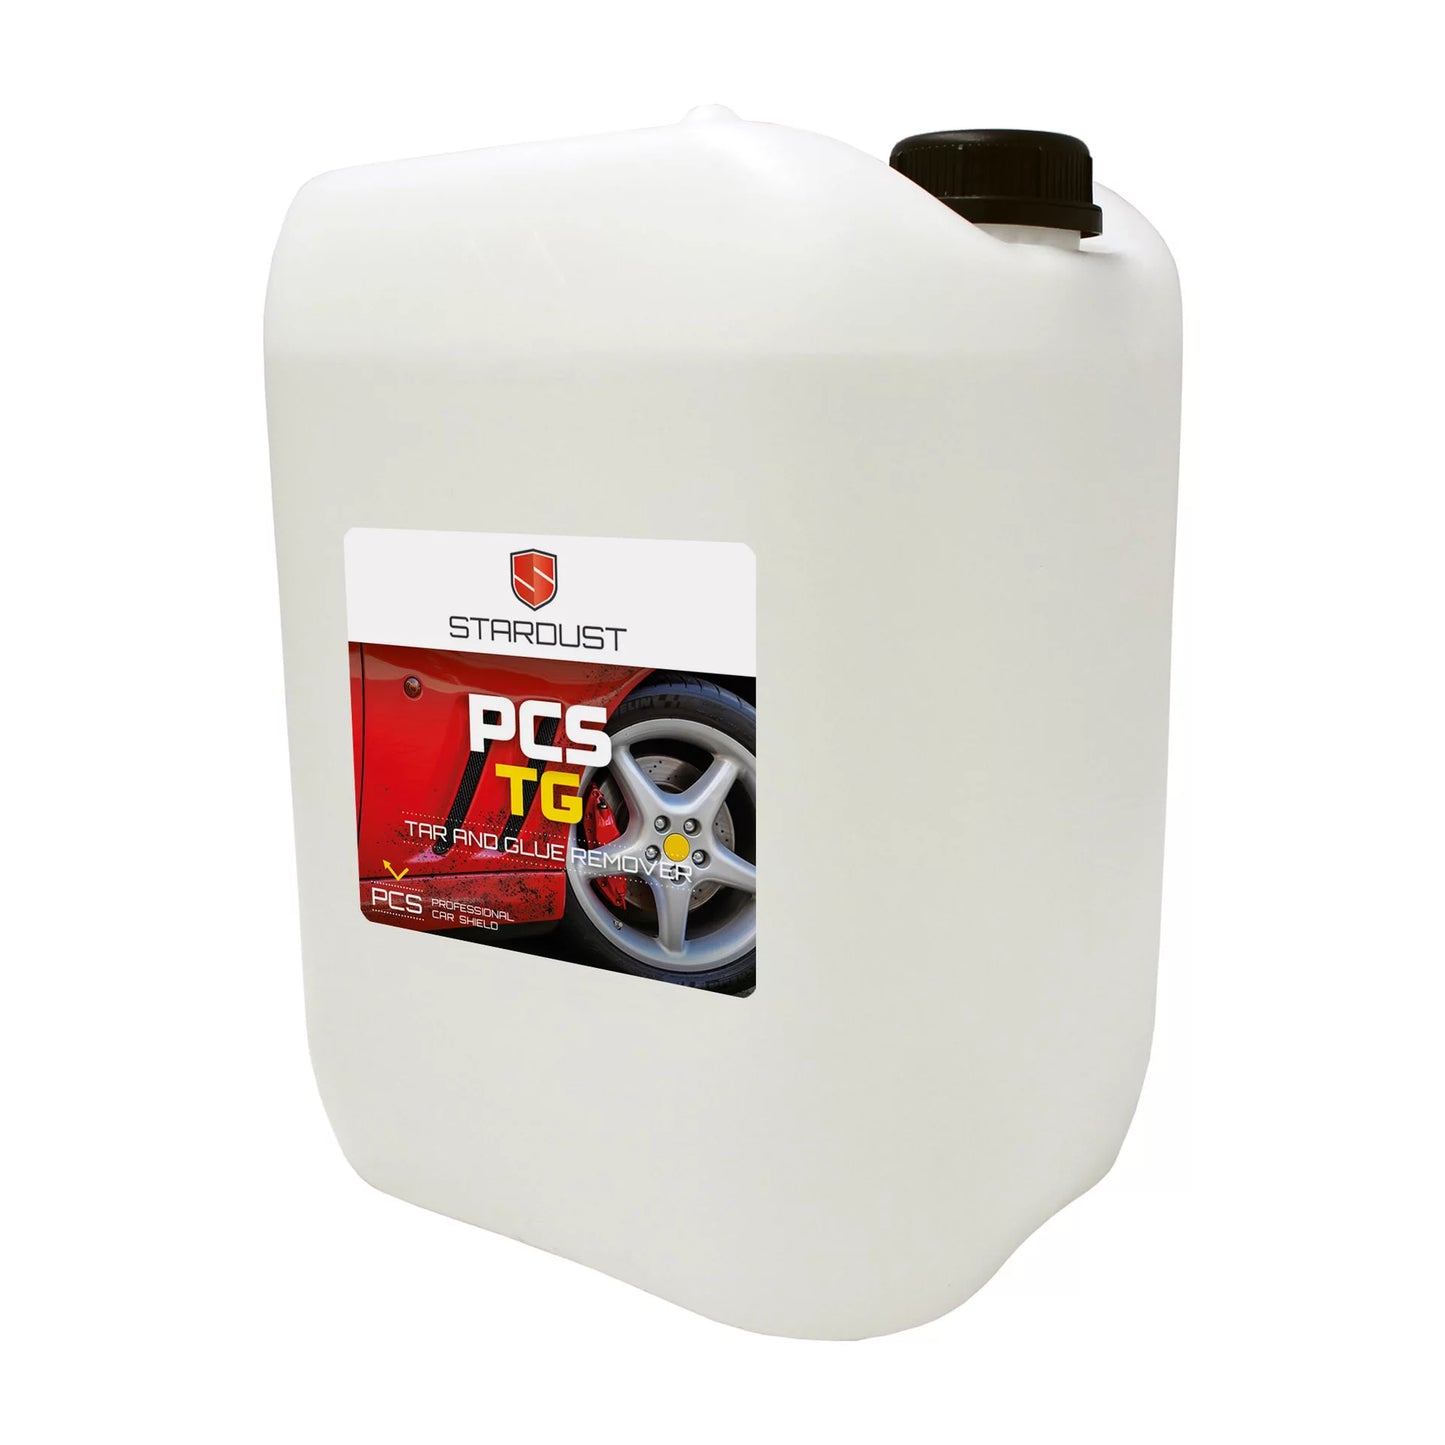 Stardust PCS TG Pien- Ja Liimanpoistoaine (3 kokoa)